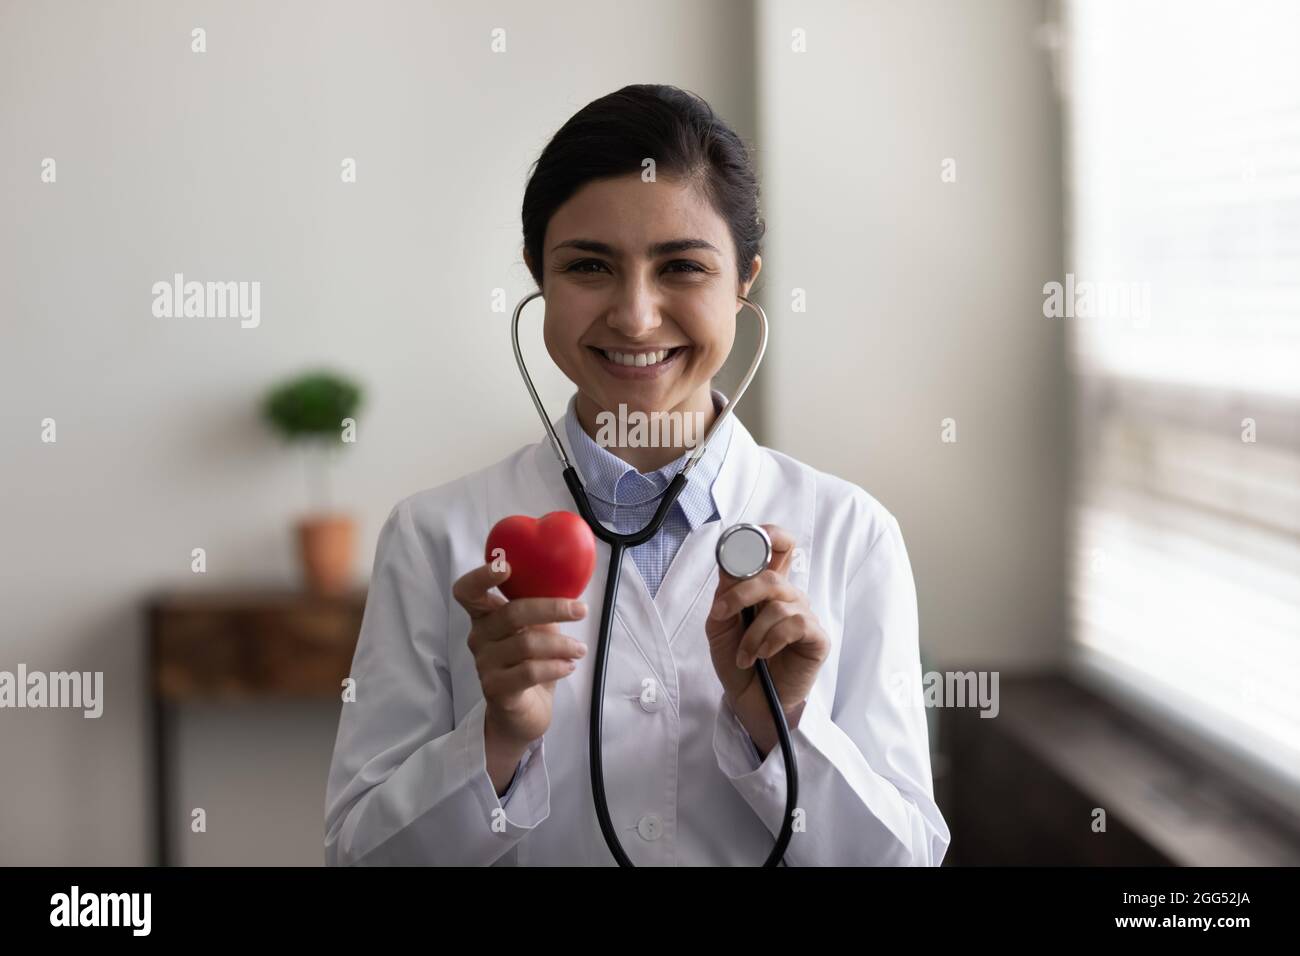 Lächelnder junger indischer Kardiologe, der an ein regelmäßiges Kontrollmeeting erinnert. Stockfoto